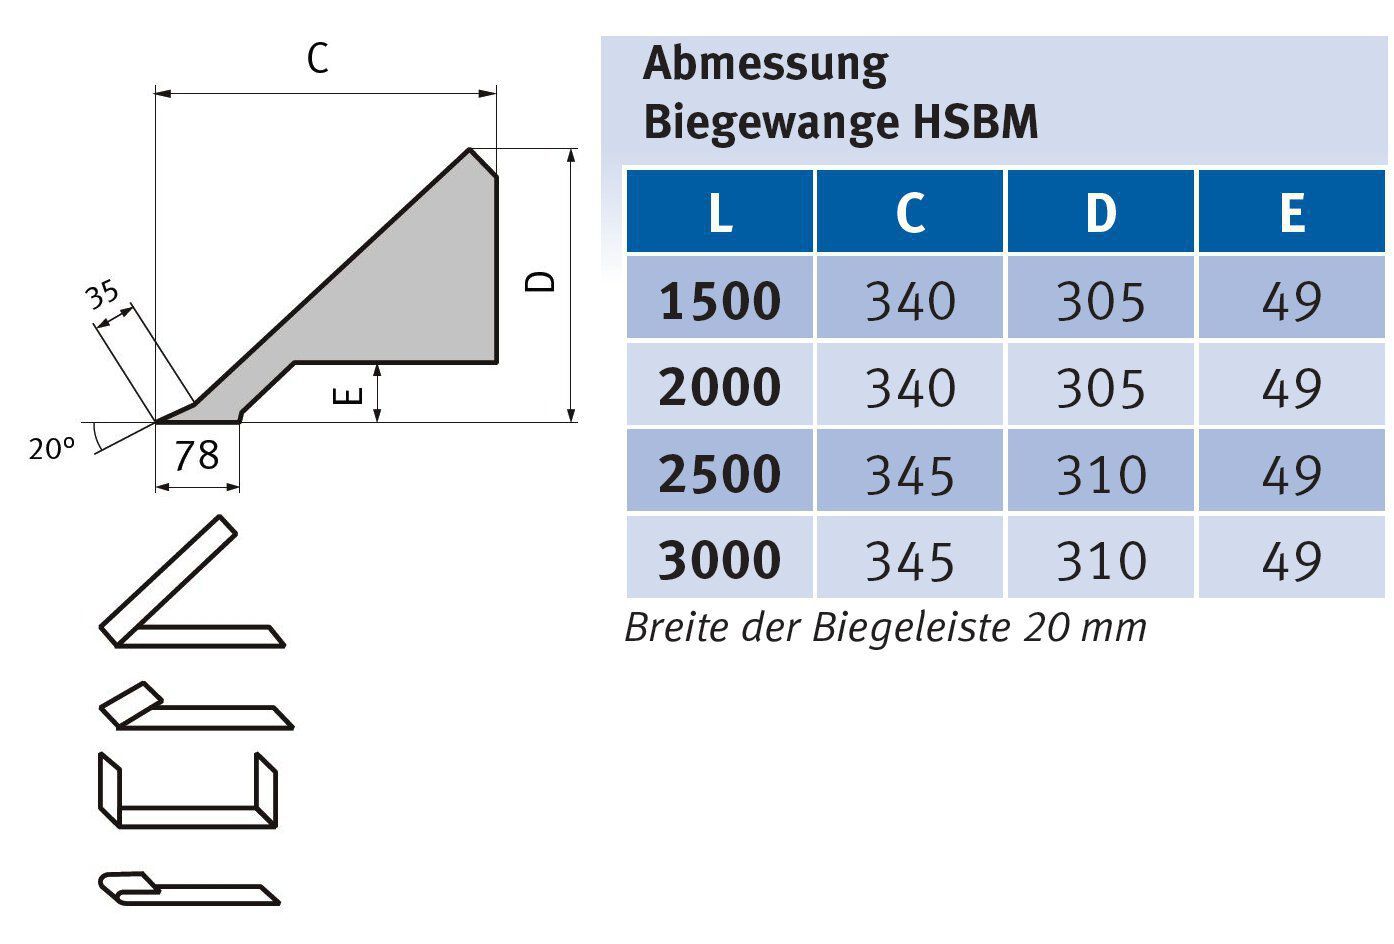 Metallkraft Schwenkbiegemaschine HSBM 3020-12